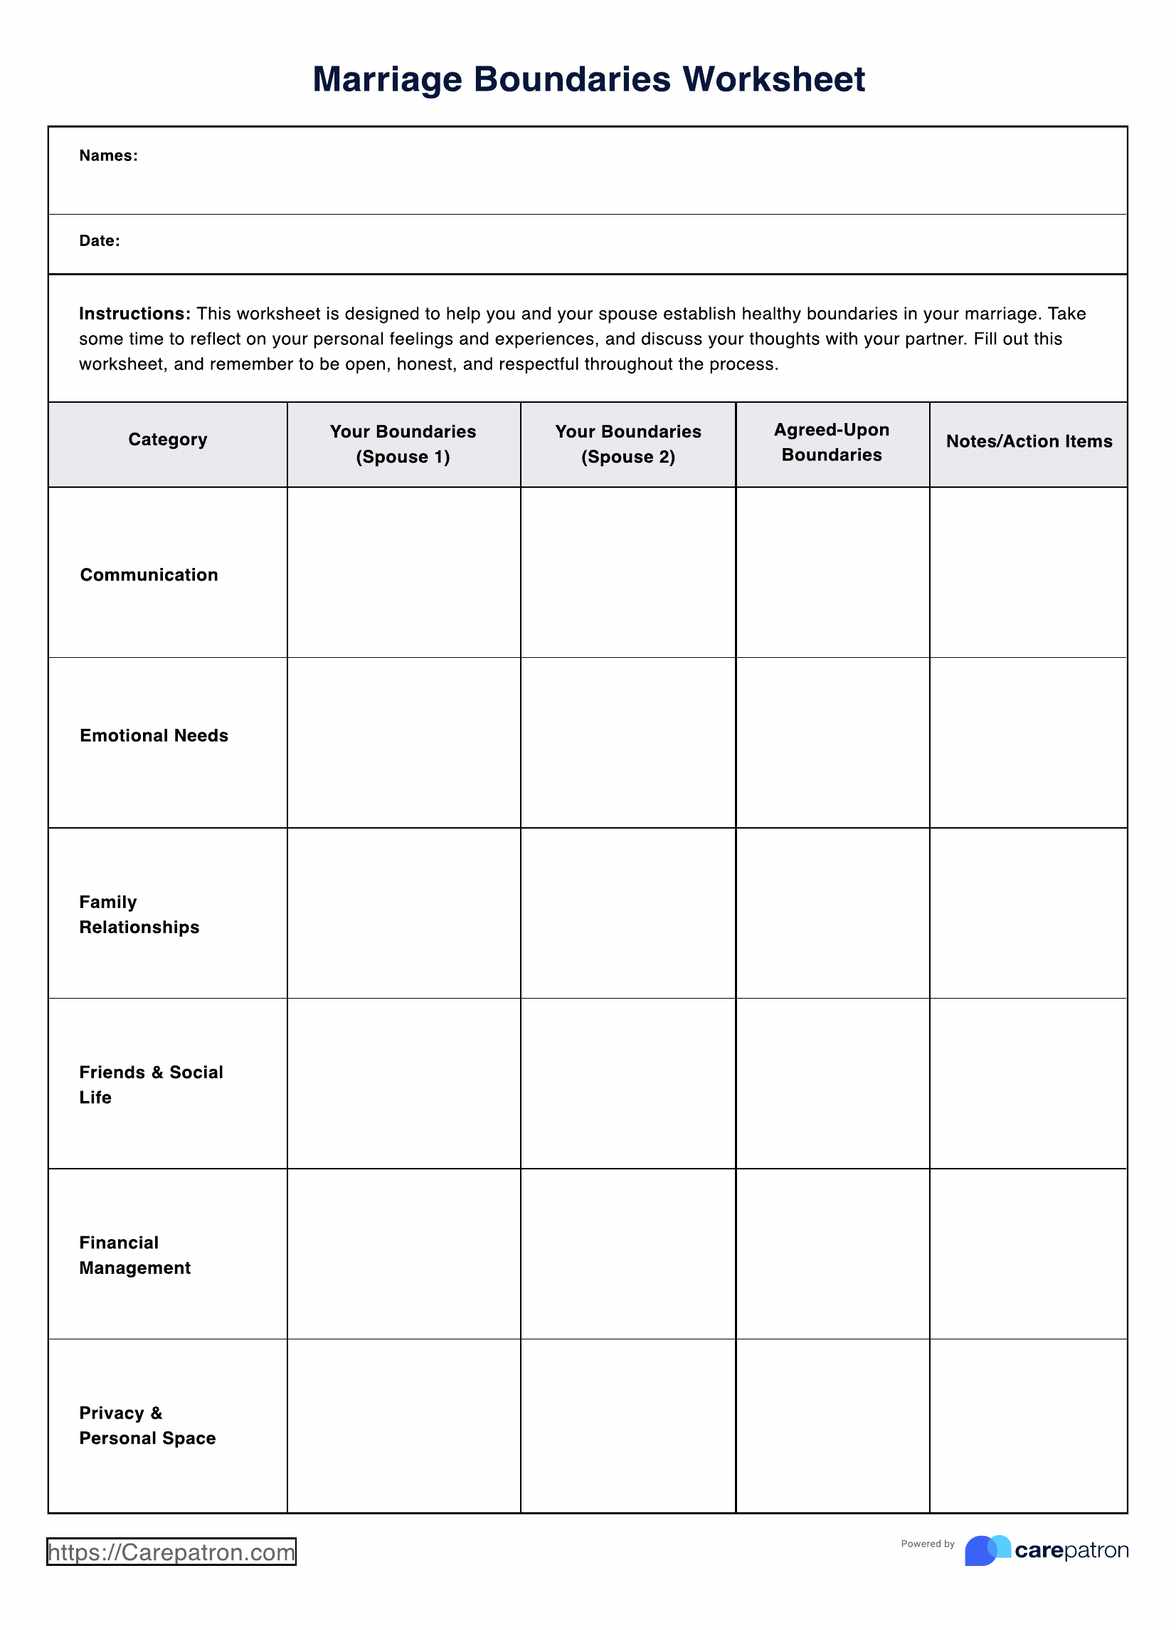 Marriage Boundaries Worksheet PDF Example